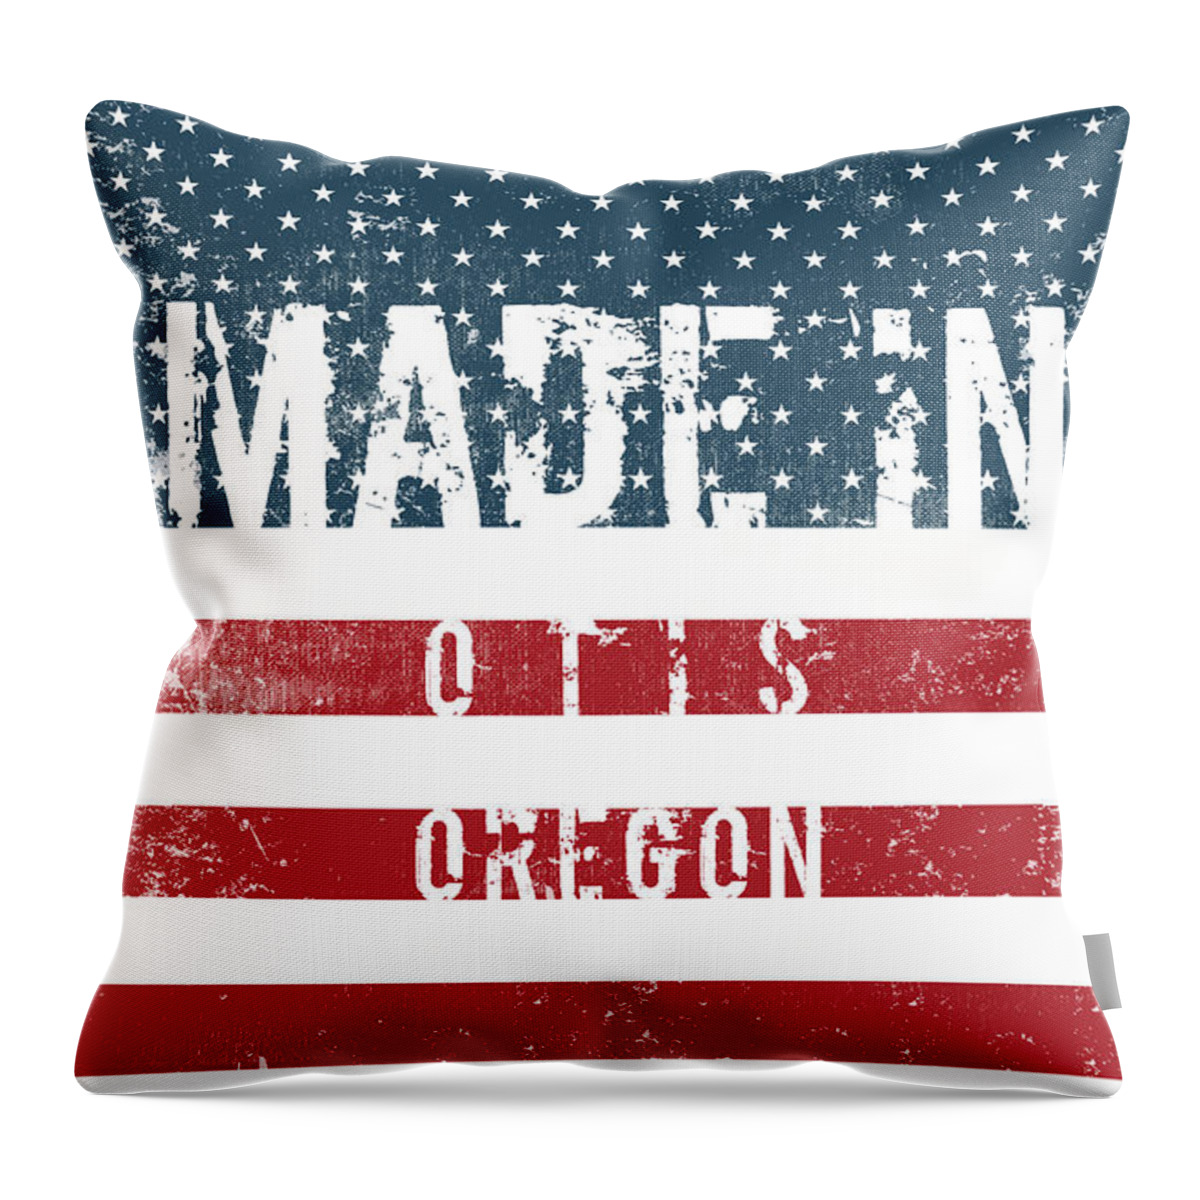 Otis Throw Pillow featuring the digital art Made in Otis, Oregon #Otis #Oregon by TintoDesigns